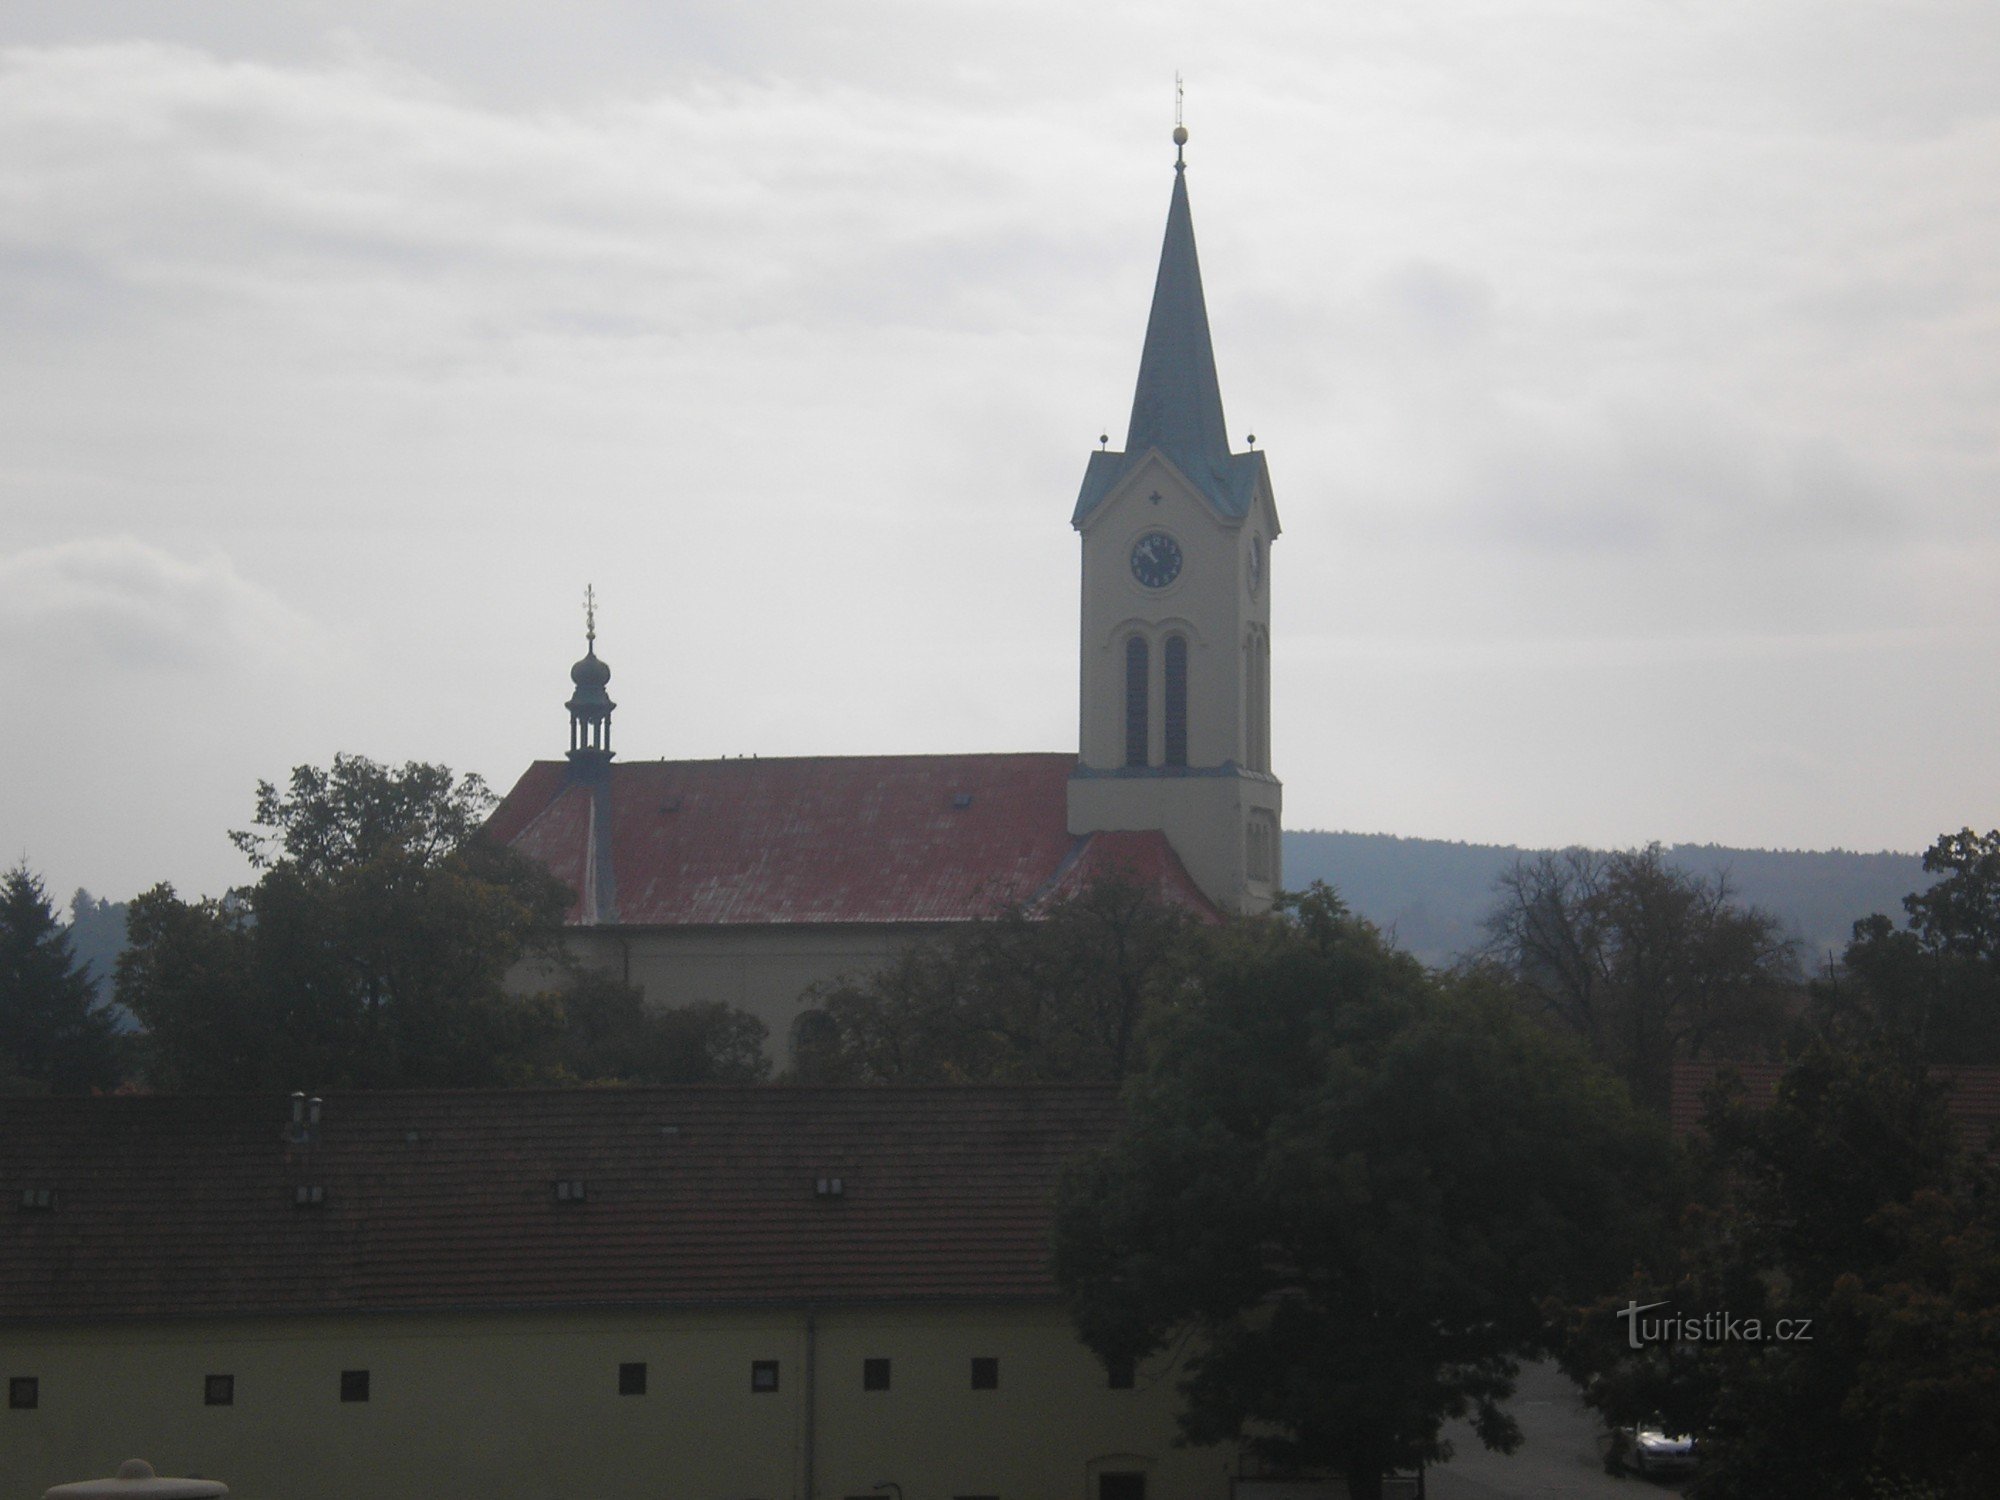 Church of St. Wenceslas in Mníšek